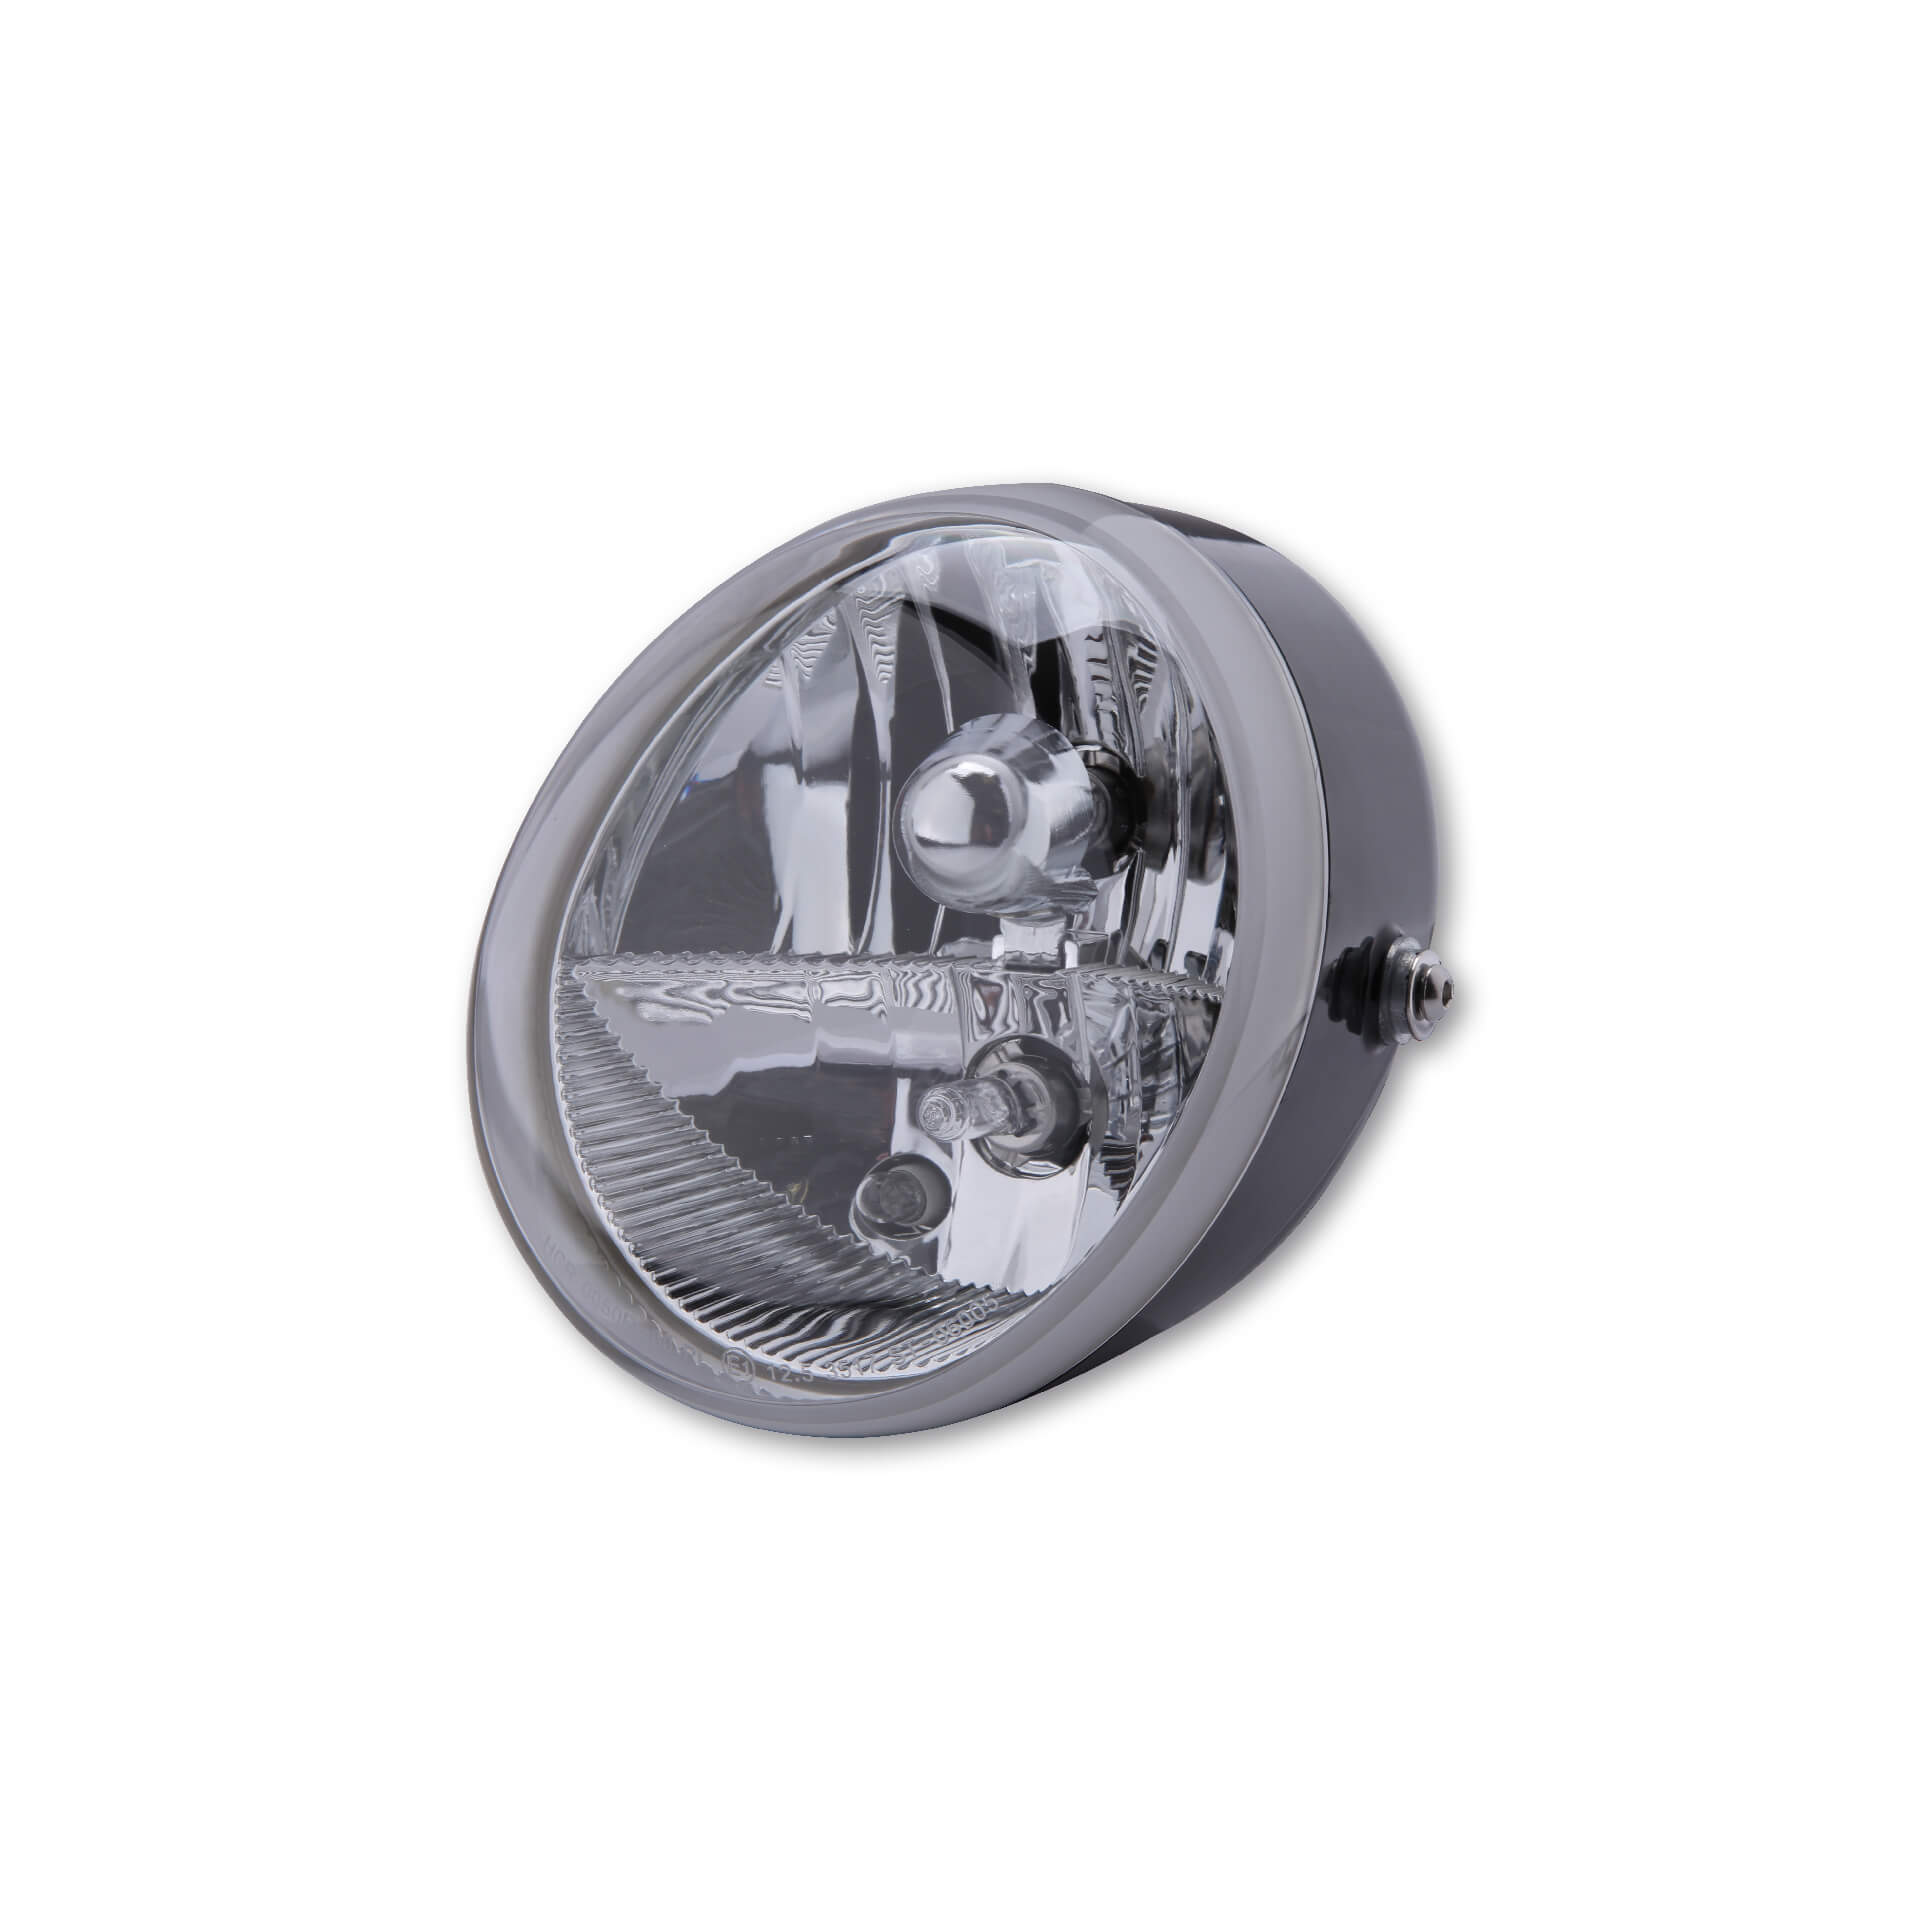 HIGHSIDER 5 3/4 Zoll LED-Scheinwerfer PECOS TYP 6 mit TFL, schwarz matt -  günstig kaufen ▷ FC-Moto